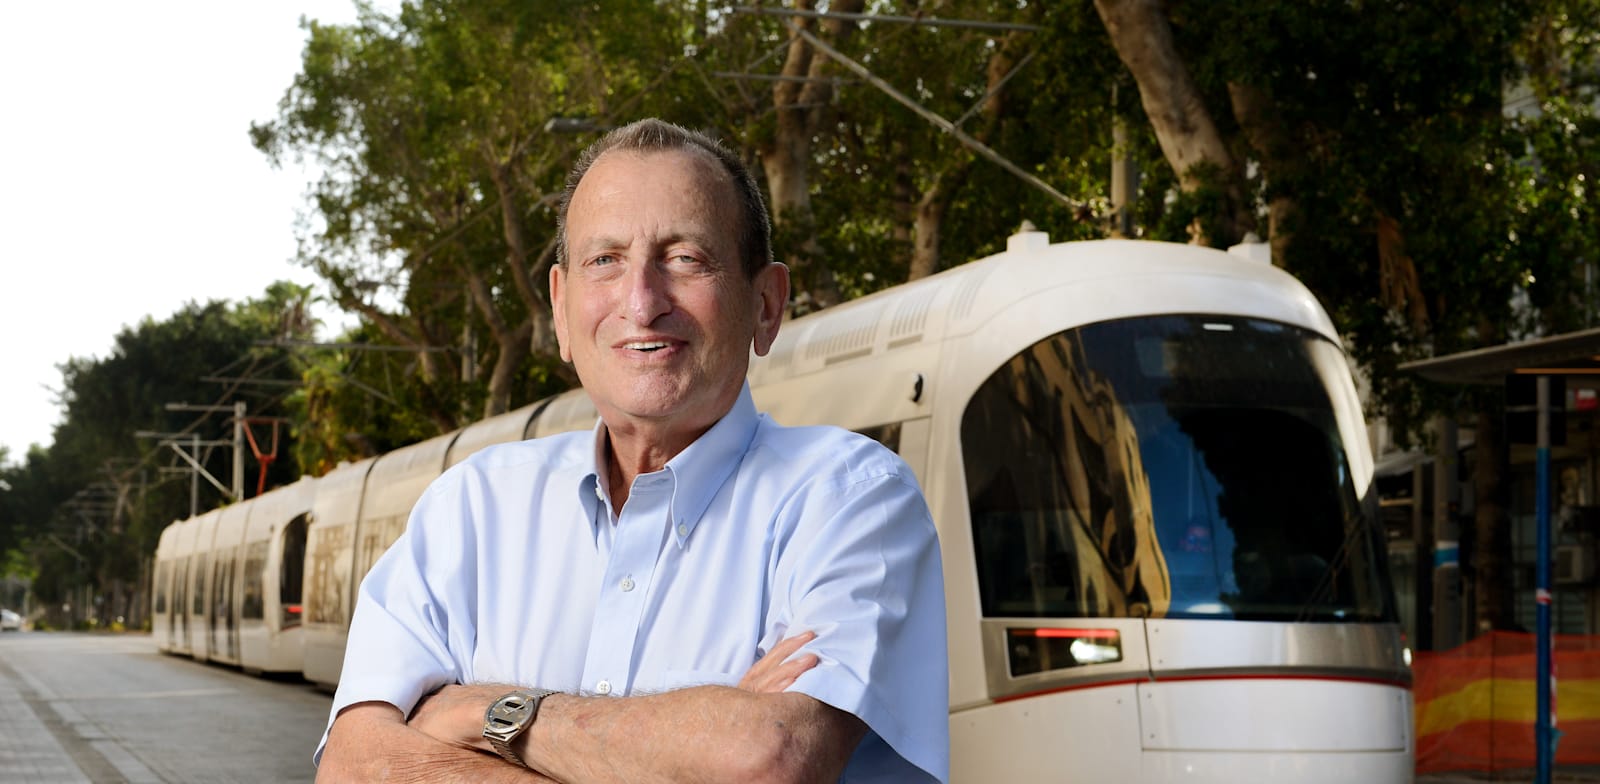 ראש עיריית תל אביב רון חולדאי והרכבת הקלה / צילום: איל יצהר